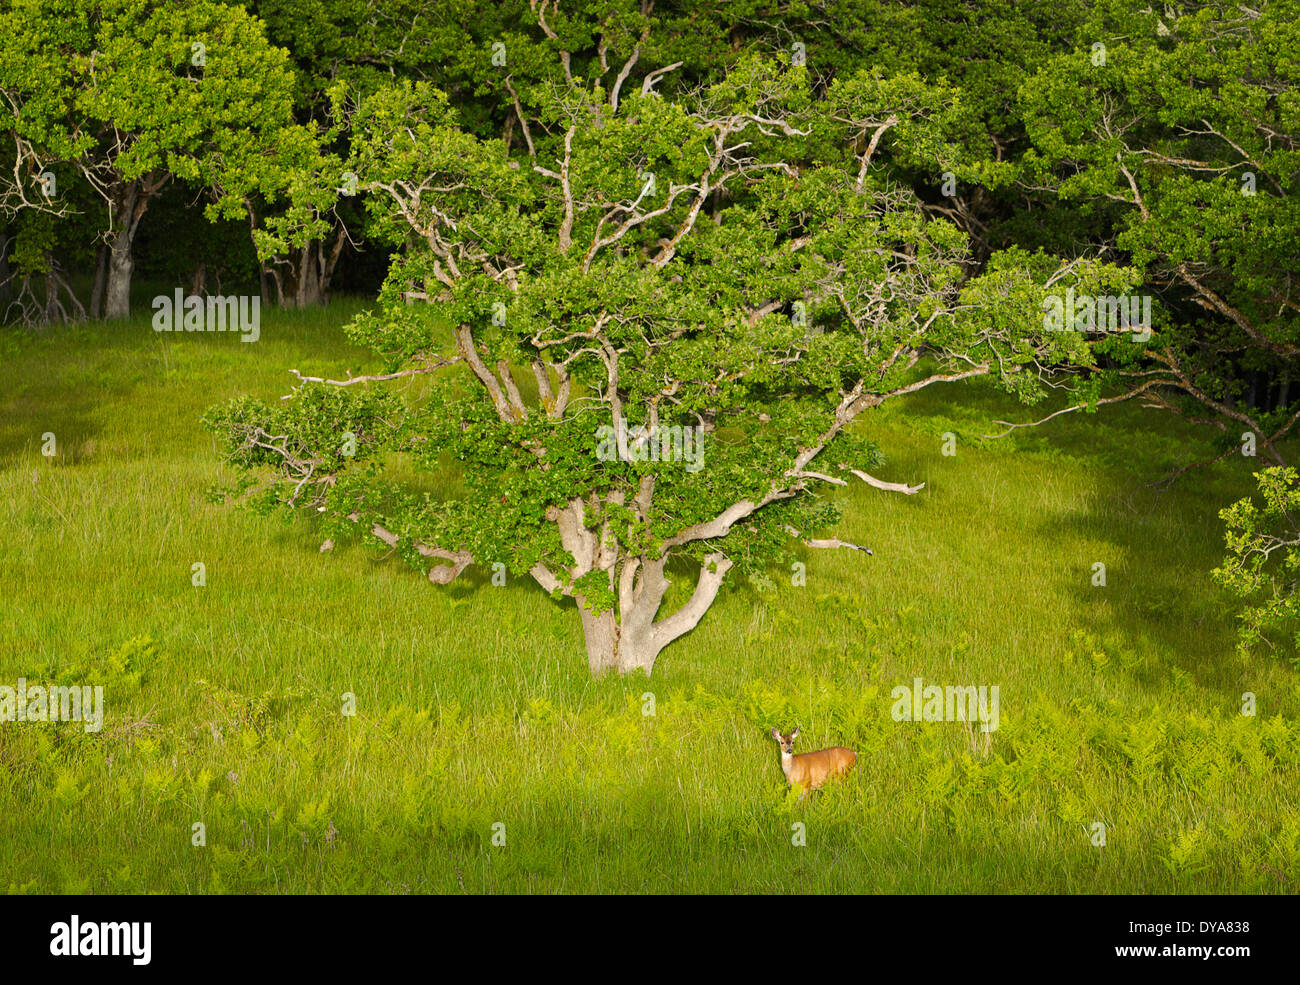 Bald Hills Redwood National Park oak oaks grass meadow wildlife mule deer deer meadow wild doe animal black-tailed deer mam Stock Photo